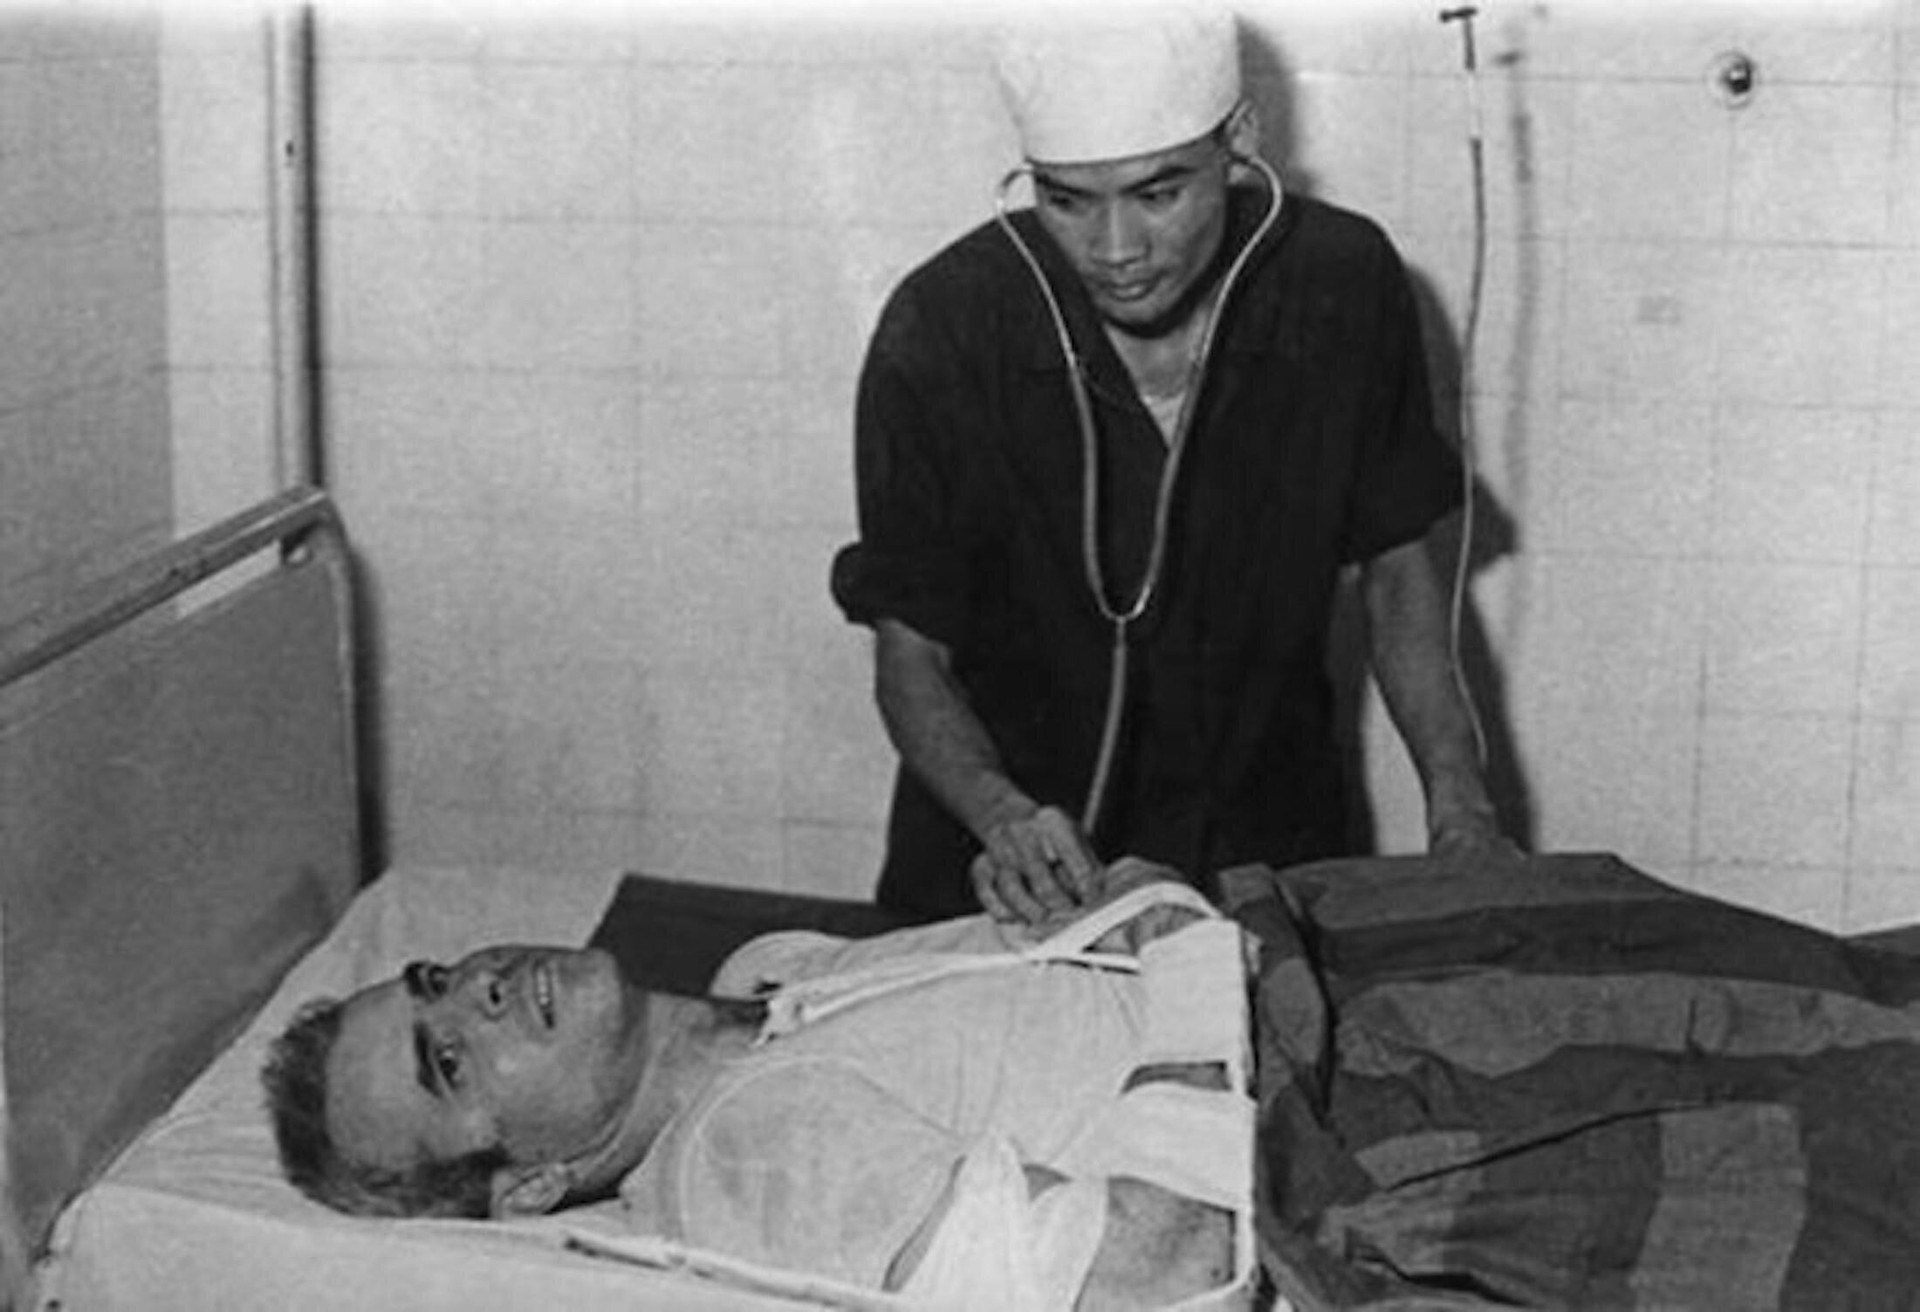 Các bác sĩ quân y điều trị vết thương cho John Mc.Cain - phi công Mỹ bị bắt tại hồ Trúc Bạch, Hà Nội, ngày 26/10/1967. Khi Mỹ tiến hành chiến tranh phá hoại miền Bắc, quân và dân miền Bắc đã bắn rơi hàng nghìn máy bay, bắt giữ gần 500 phi công Mỹ. Một số phi công Mỹ đã bị tạm giam tại Nhà tù Hỏa Lò, Hà Nội. Việt Nam đã tạo điều kiện cho các tù binh phi công Mỹ ở nhà tù Hỏa Lò được hưởng chế độ ăn uống và được chăm sóc sức khỏe chu đáo trong điều kiện thời chiến cho phép. Những người gầy yếu hoặc ốm đau sẽ được ban chỉ huy trại quyết định cho ăn chế độ đặc biệt hơn.